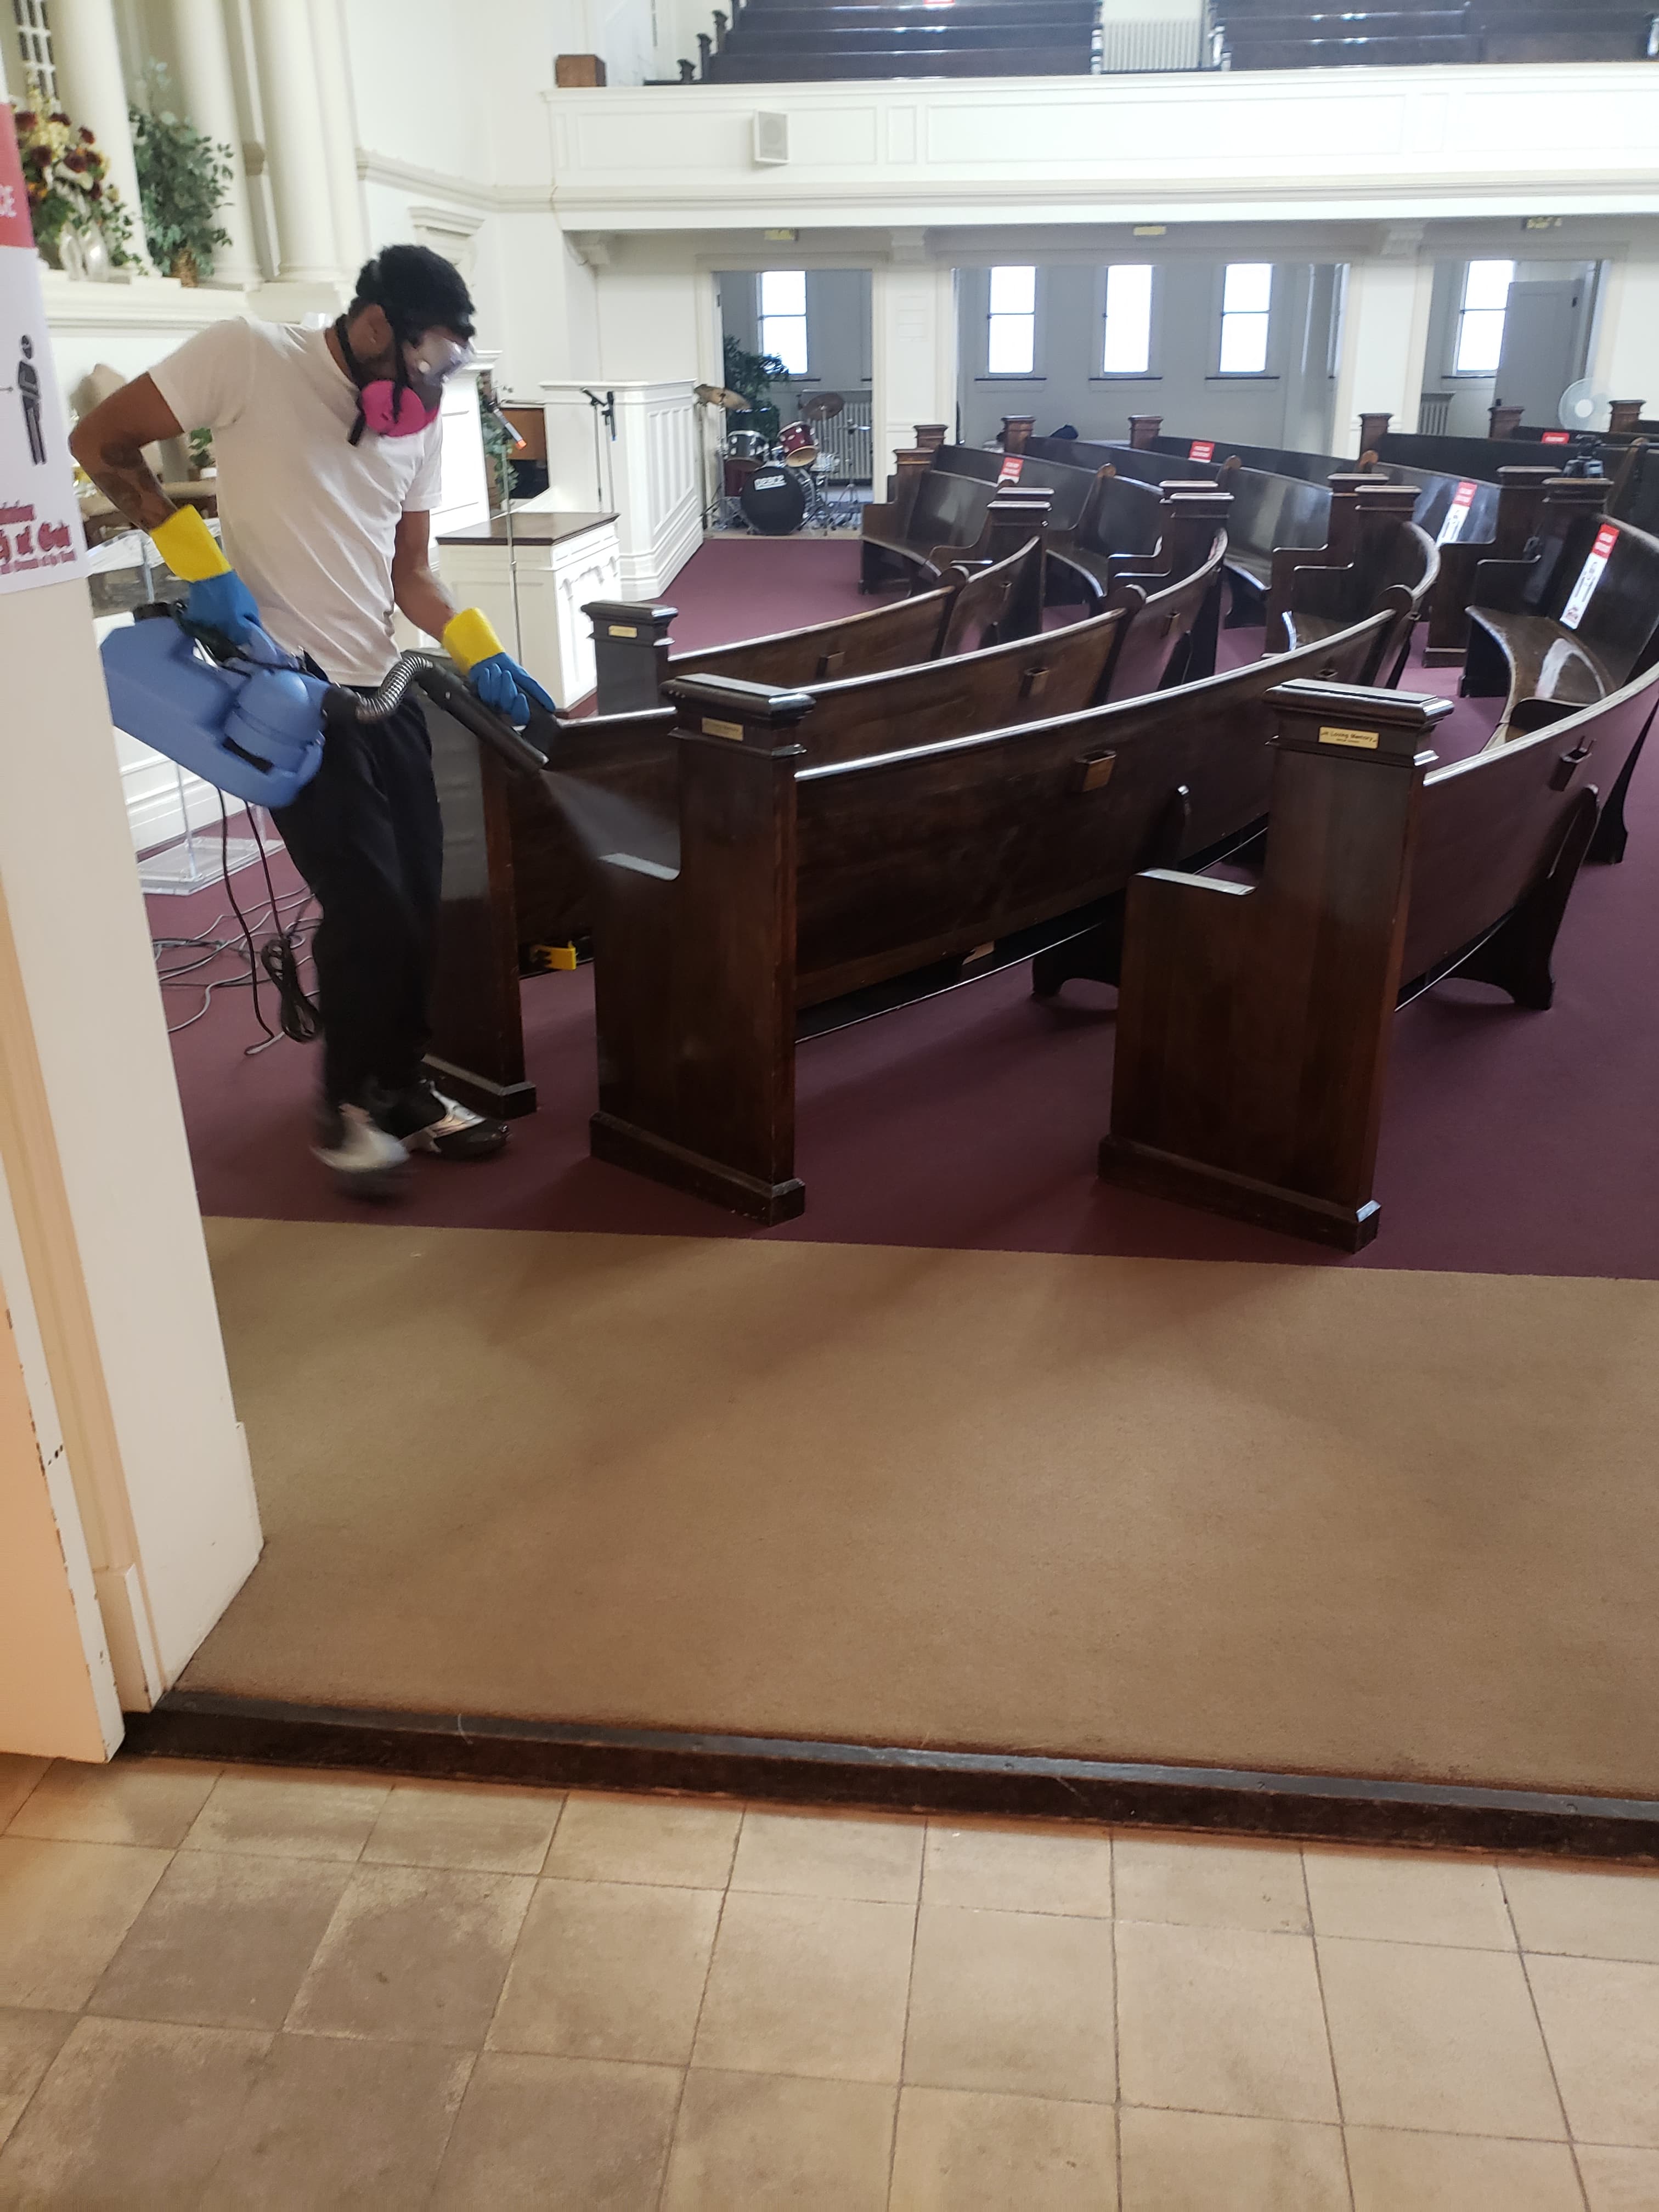 a man cleaning a church